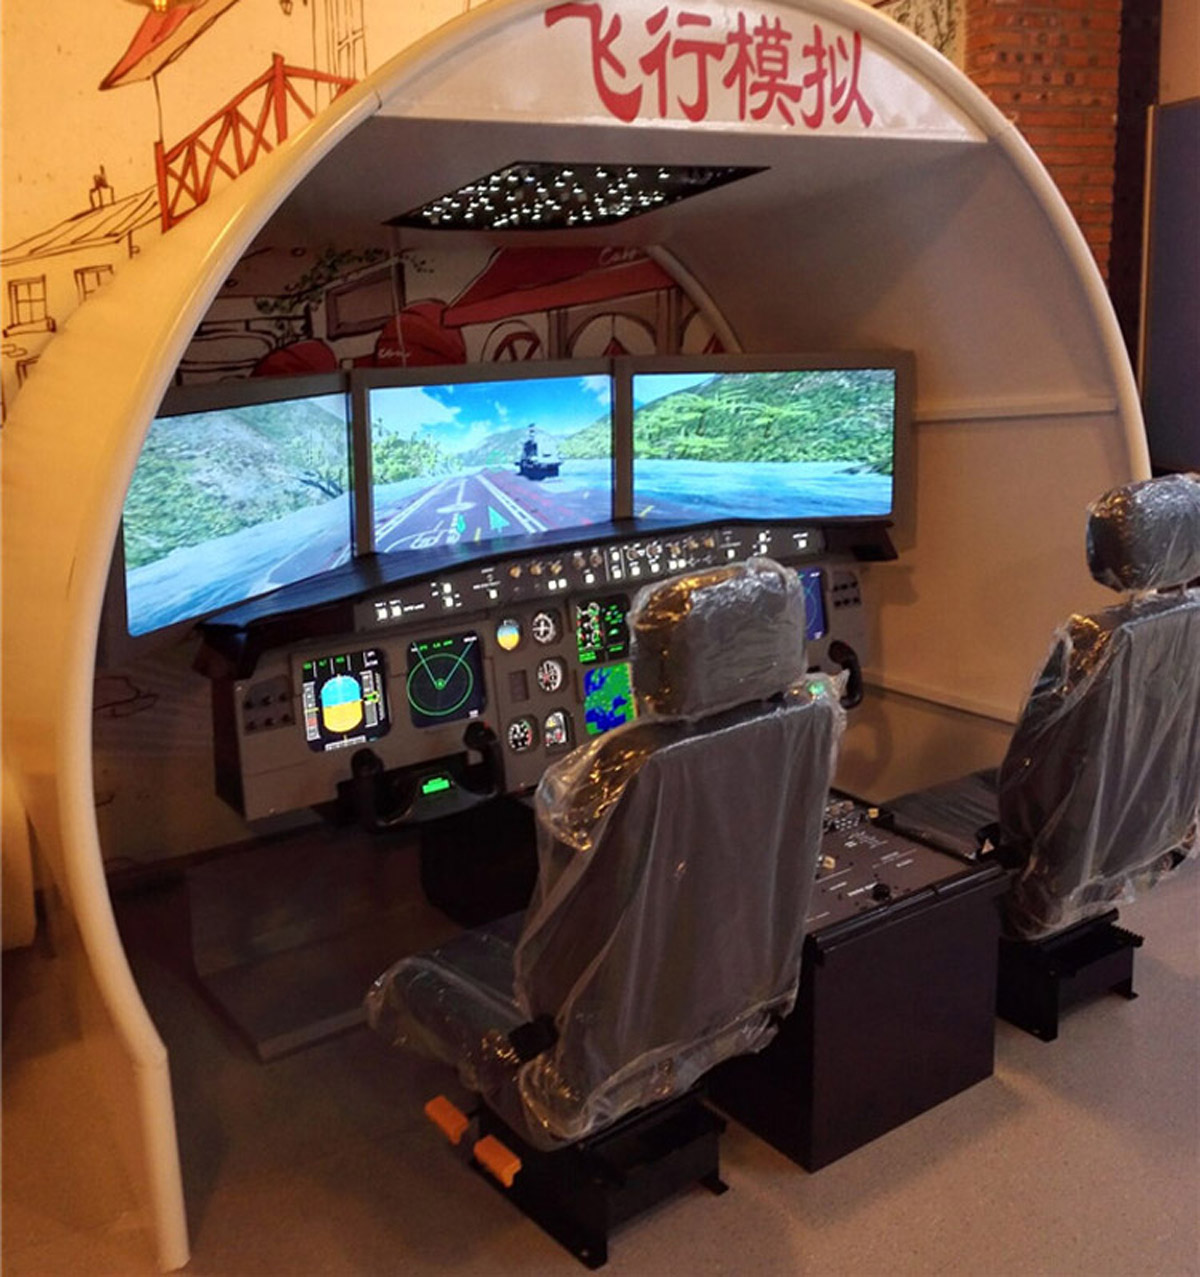 展览展示空客飞行模拟器